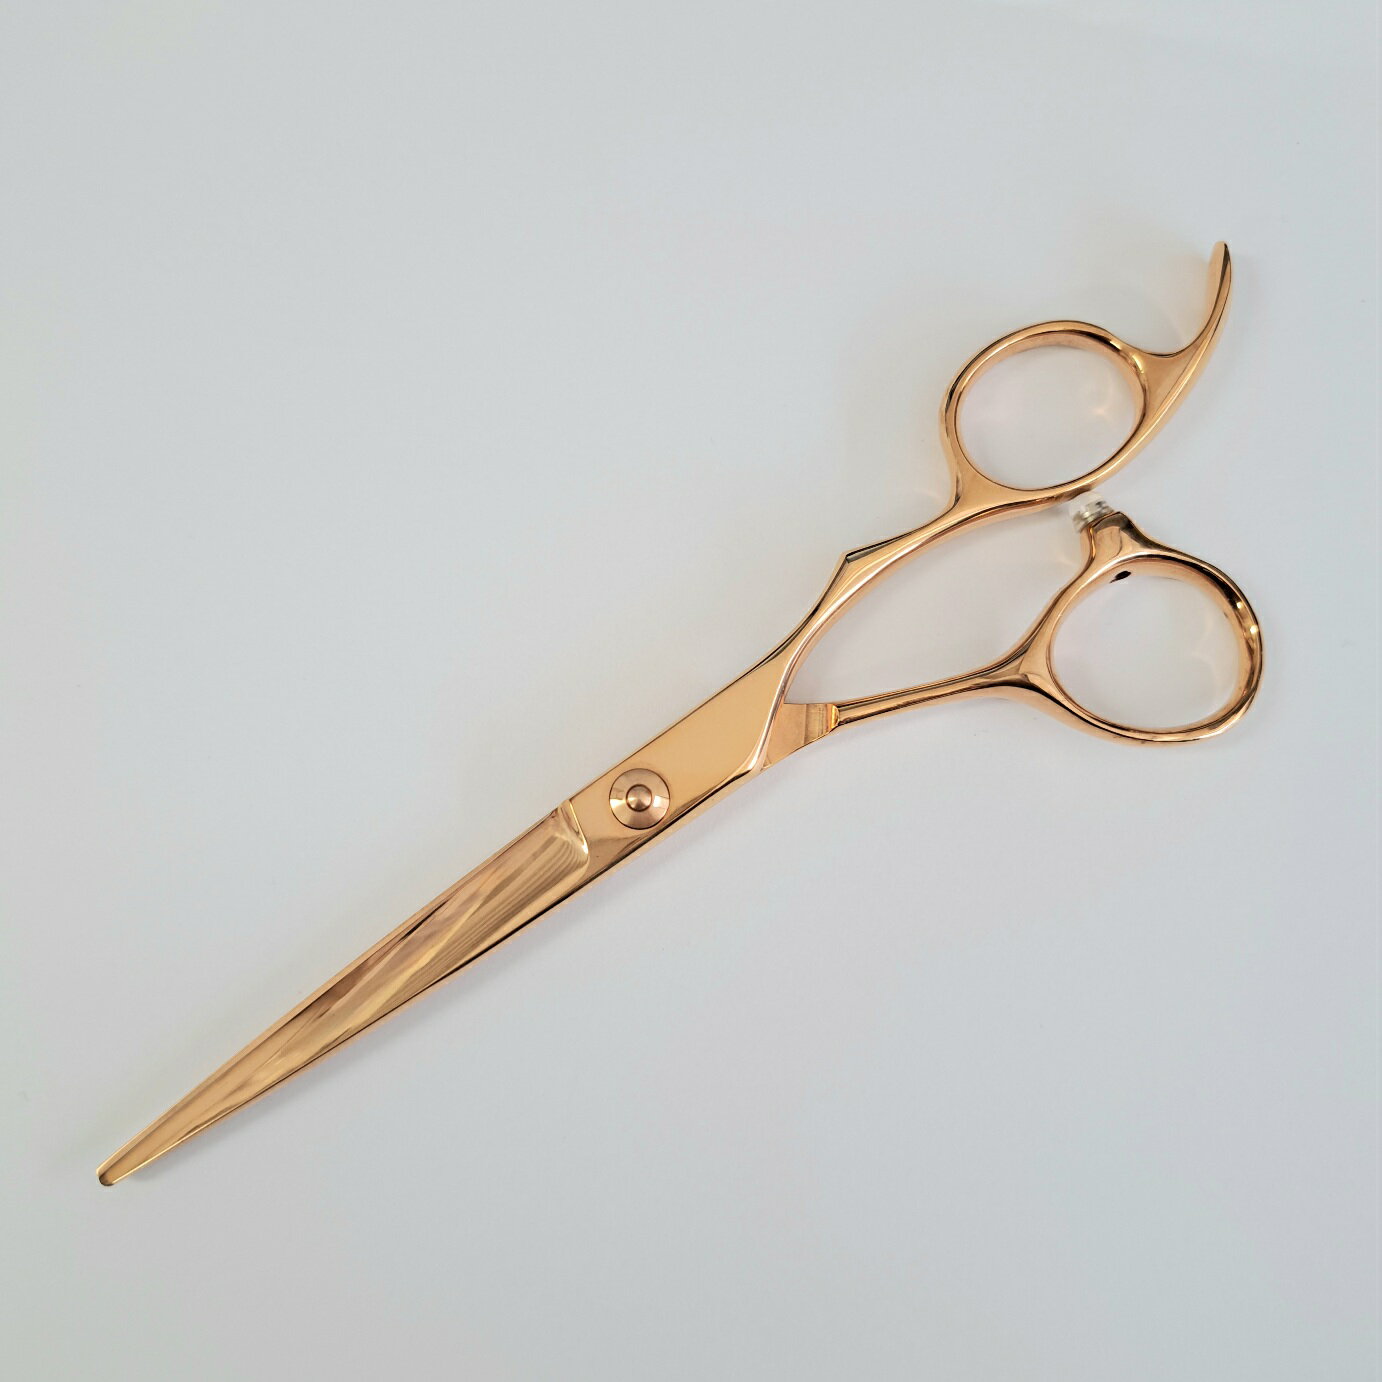 【アウトレットセール】DEEDS GTZ ピンクゴールド チタン シザー (6.0インチ) 数量限定 / 美容師 理容 理容師 散髪 はさみ シザー ヘアカット